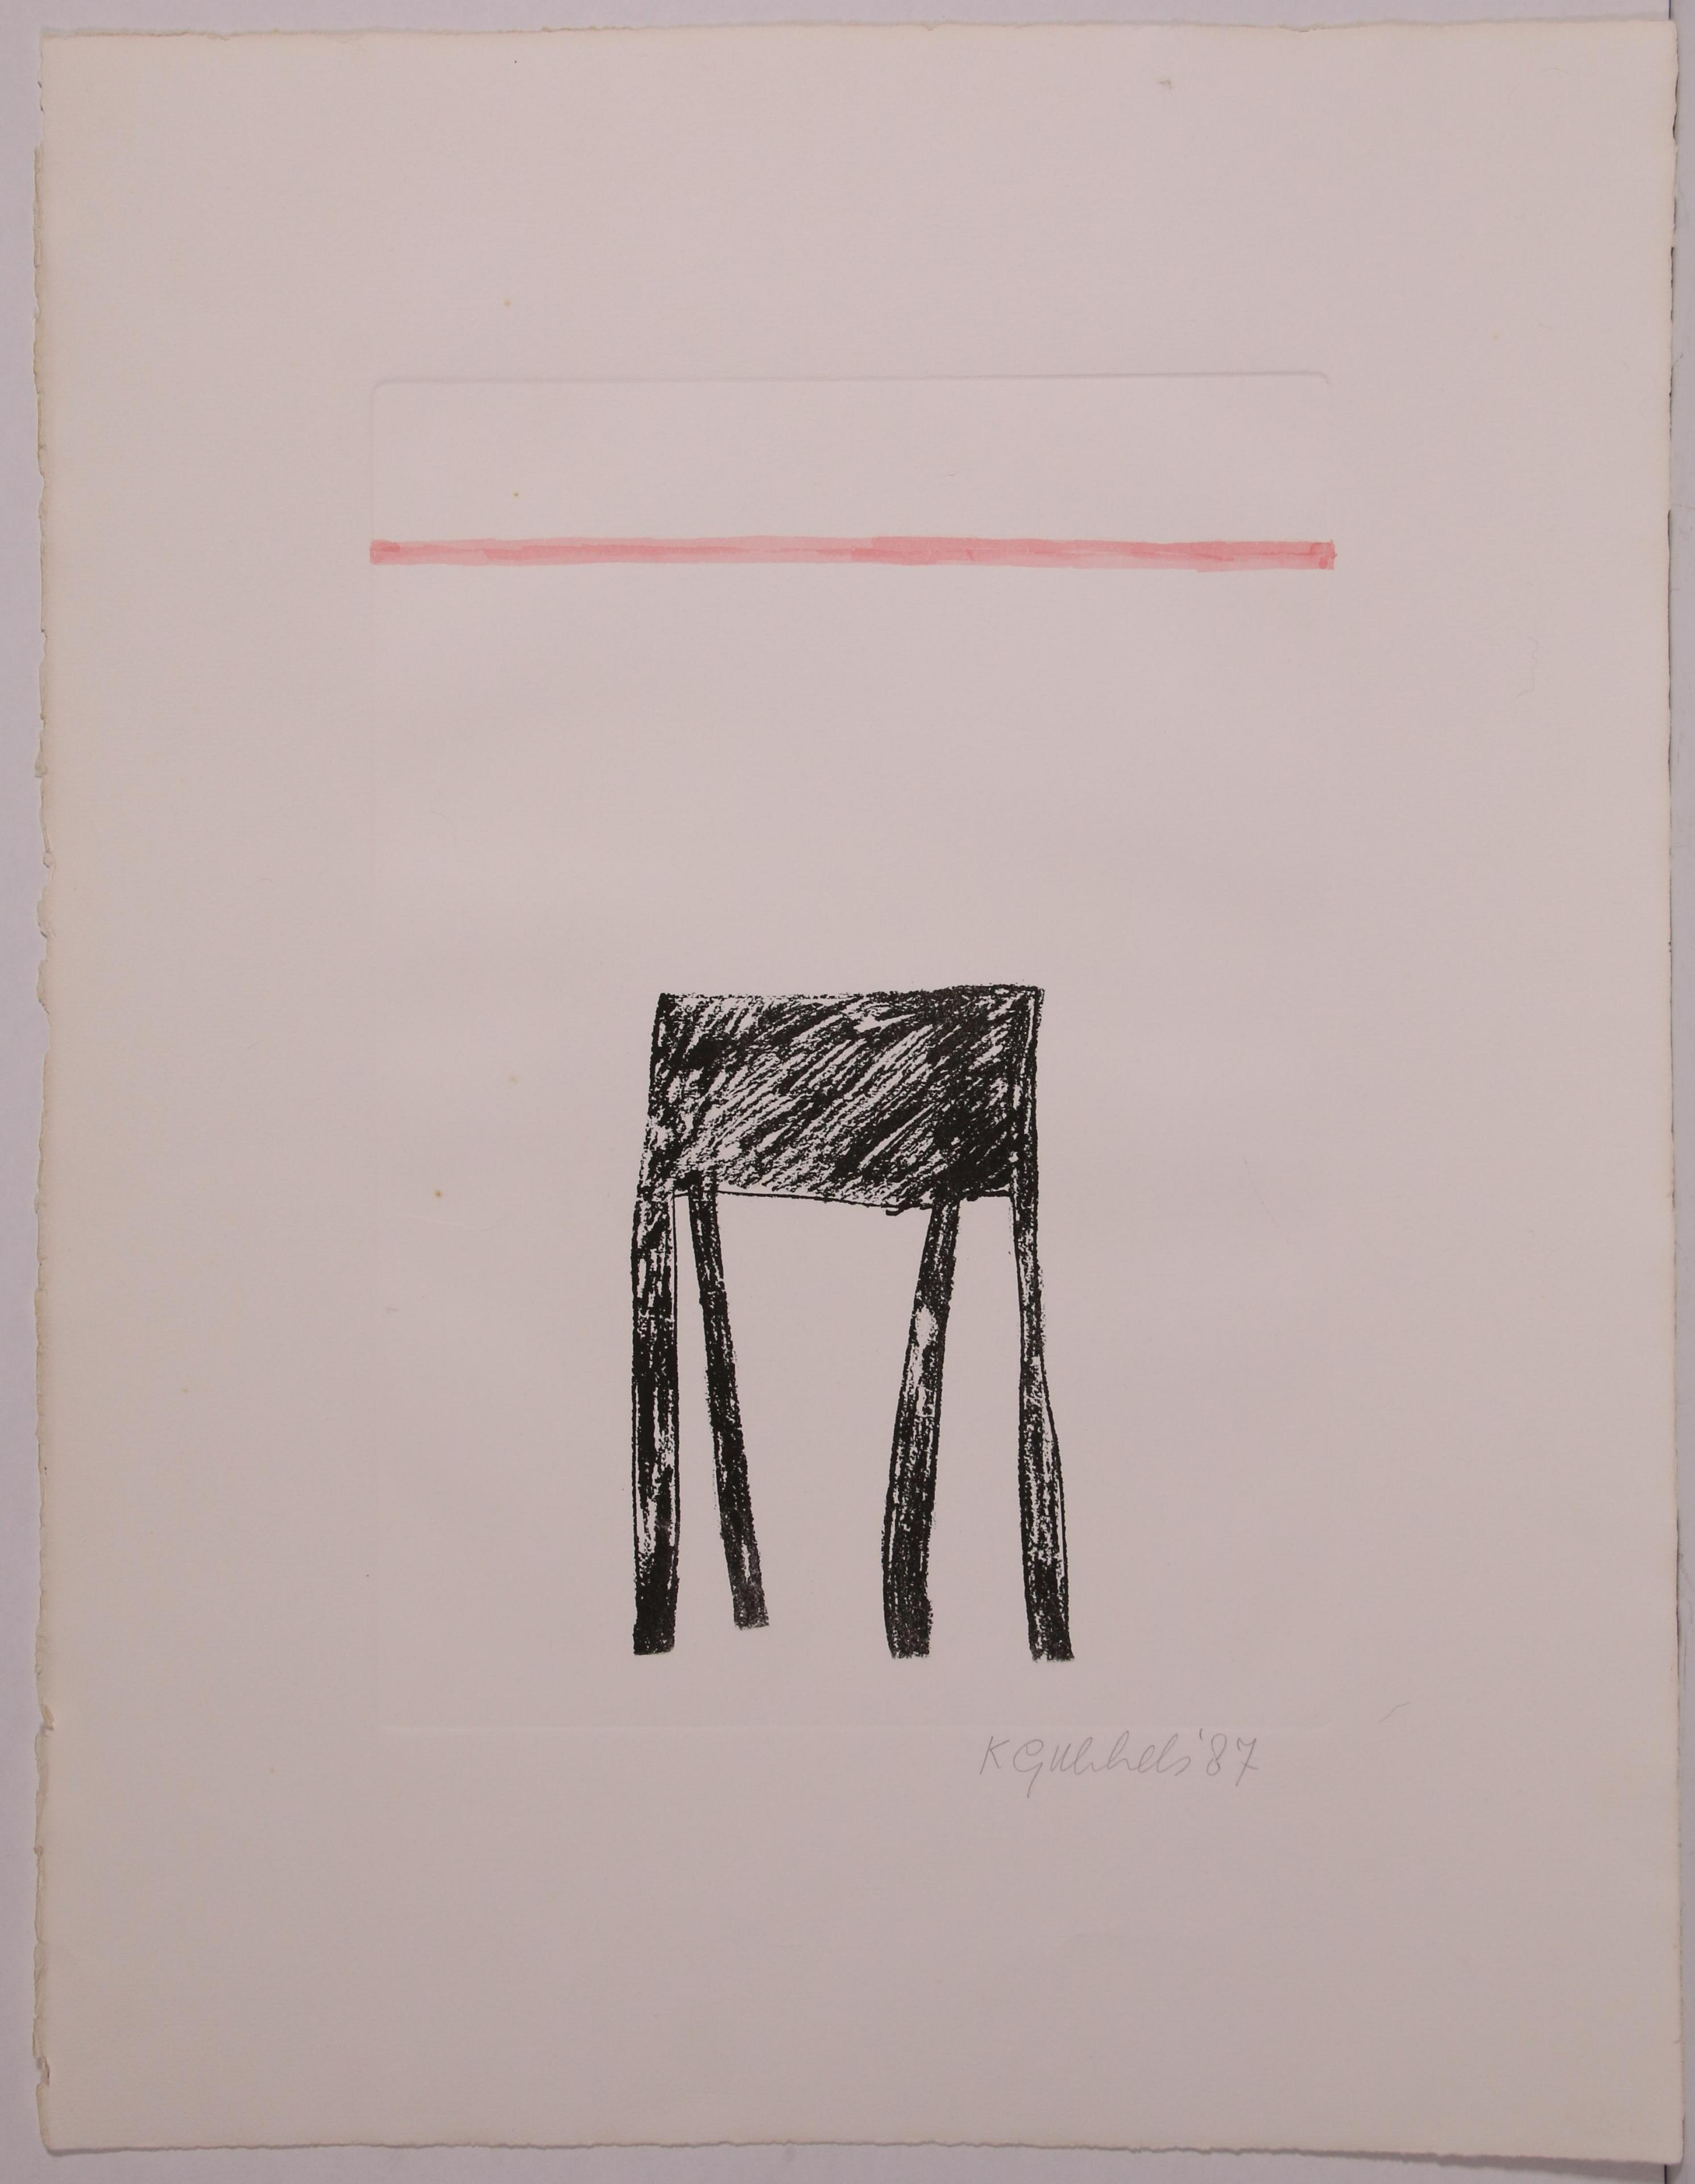 Tafel by Klaas Gubbels, 87